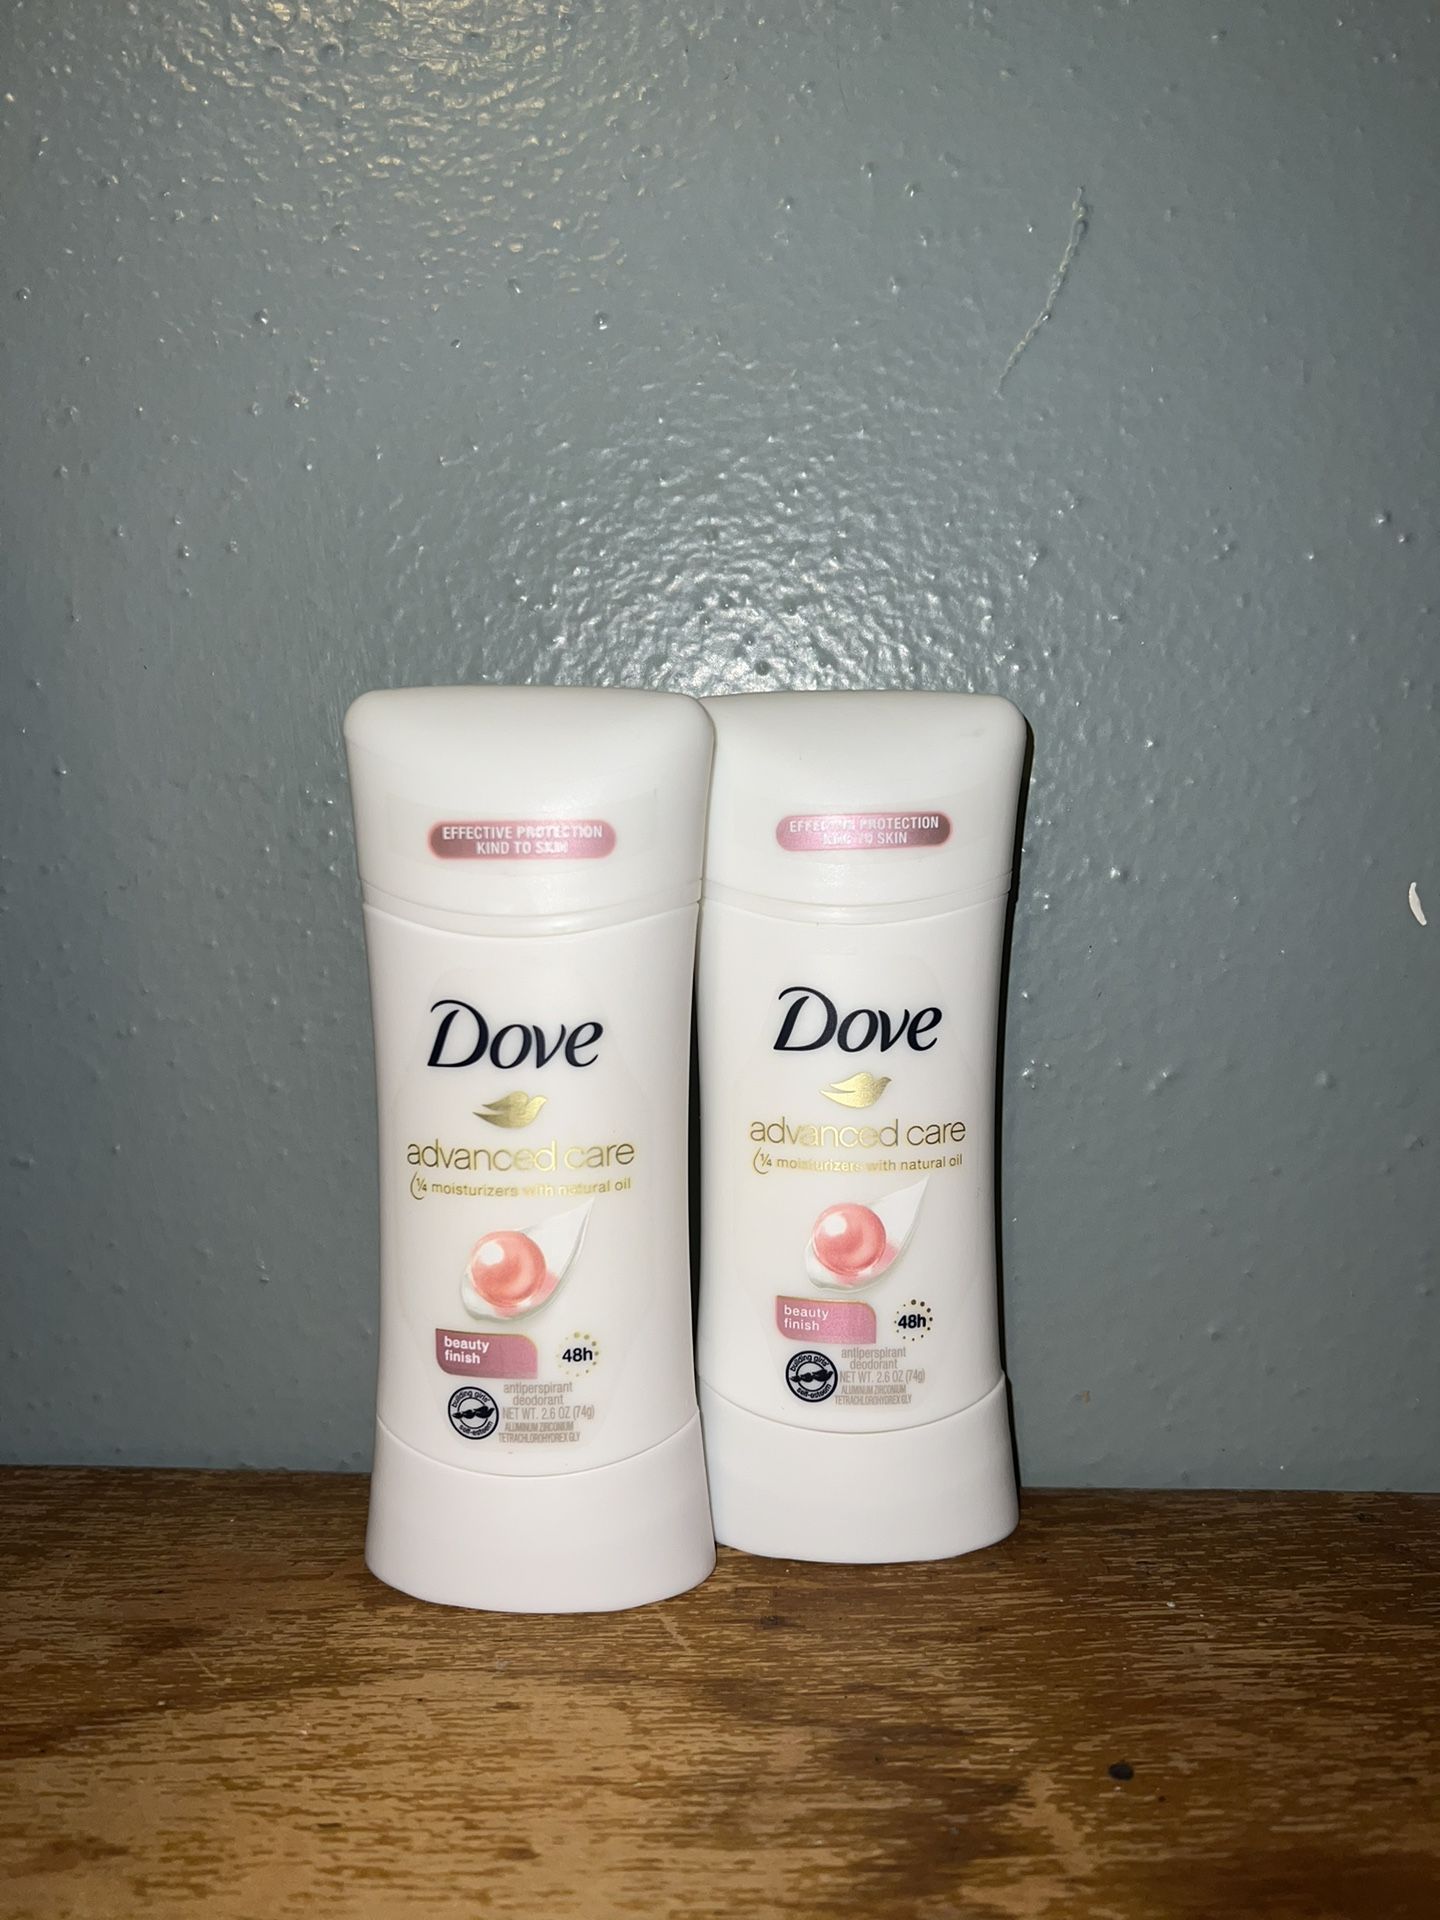 Dove Beauty Finish Deodorant Set